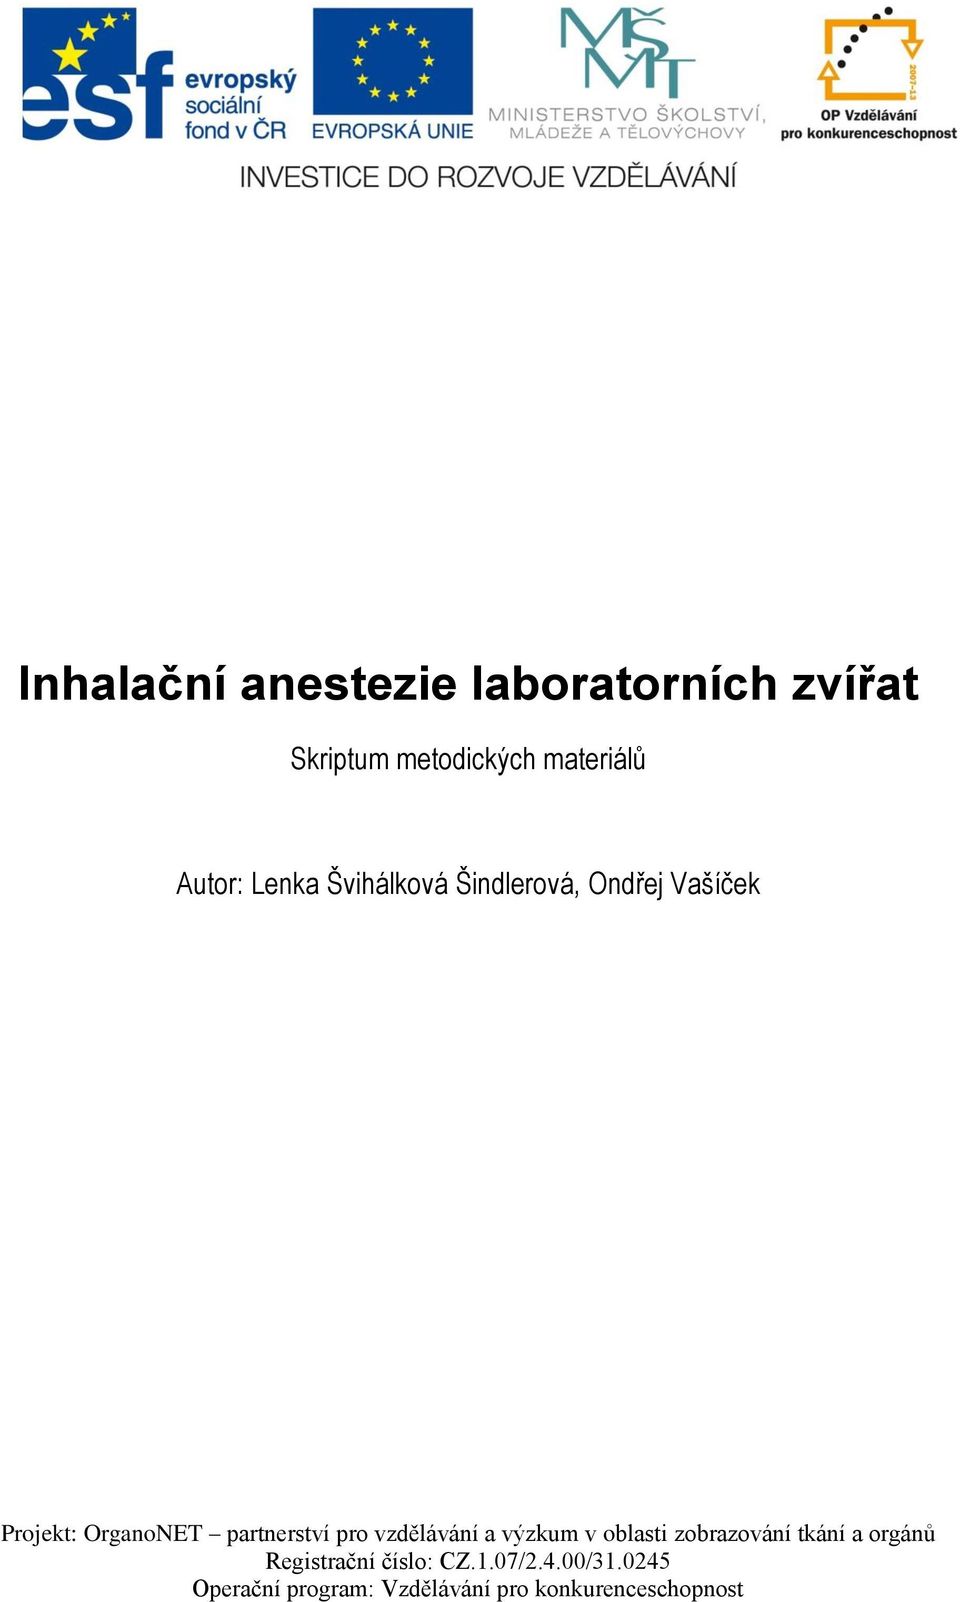 Inhalační anestezie laboratorních zvířat - PDF Free Download